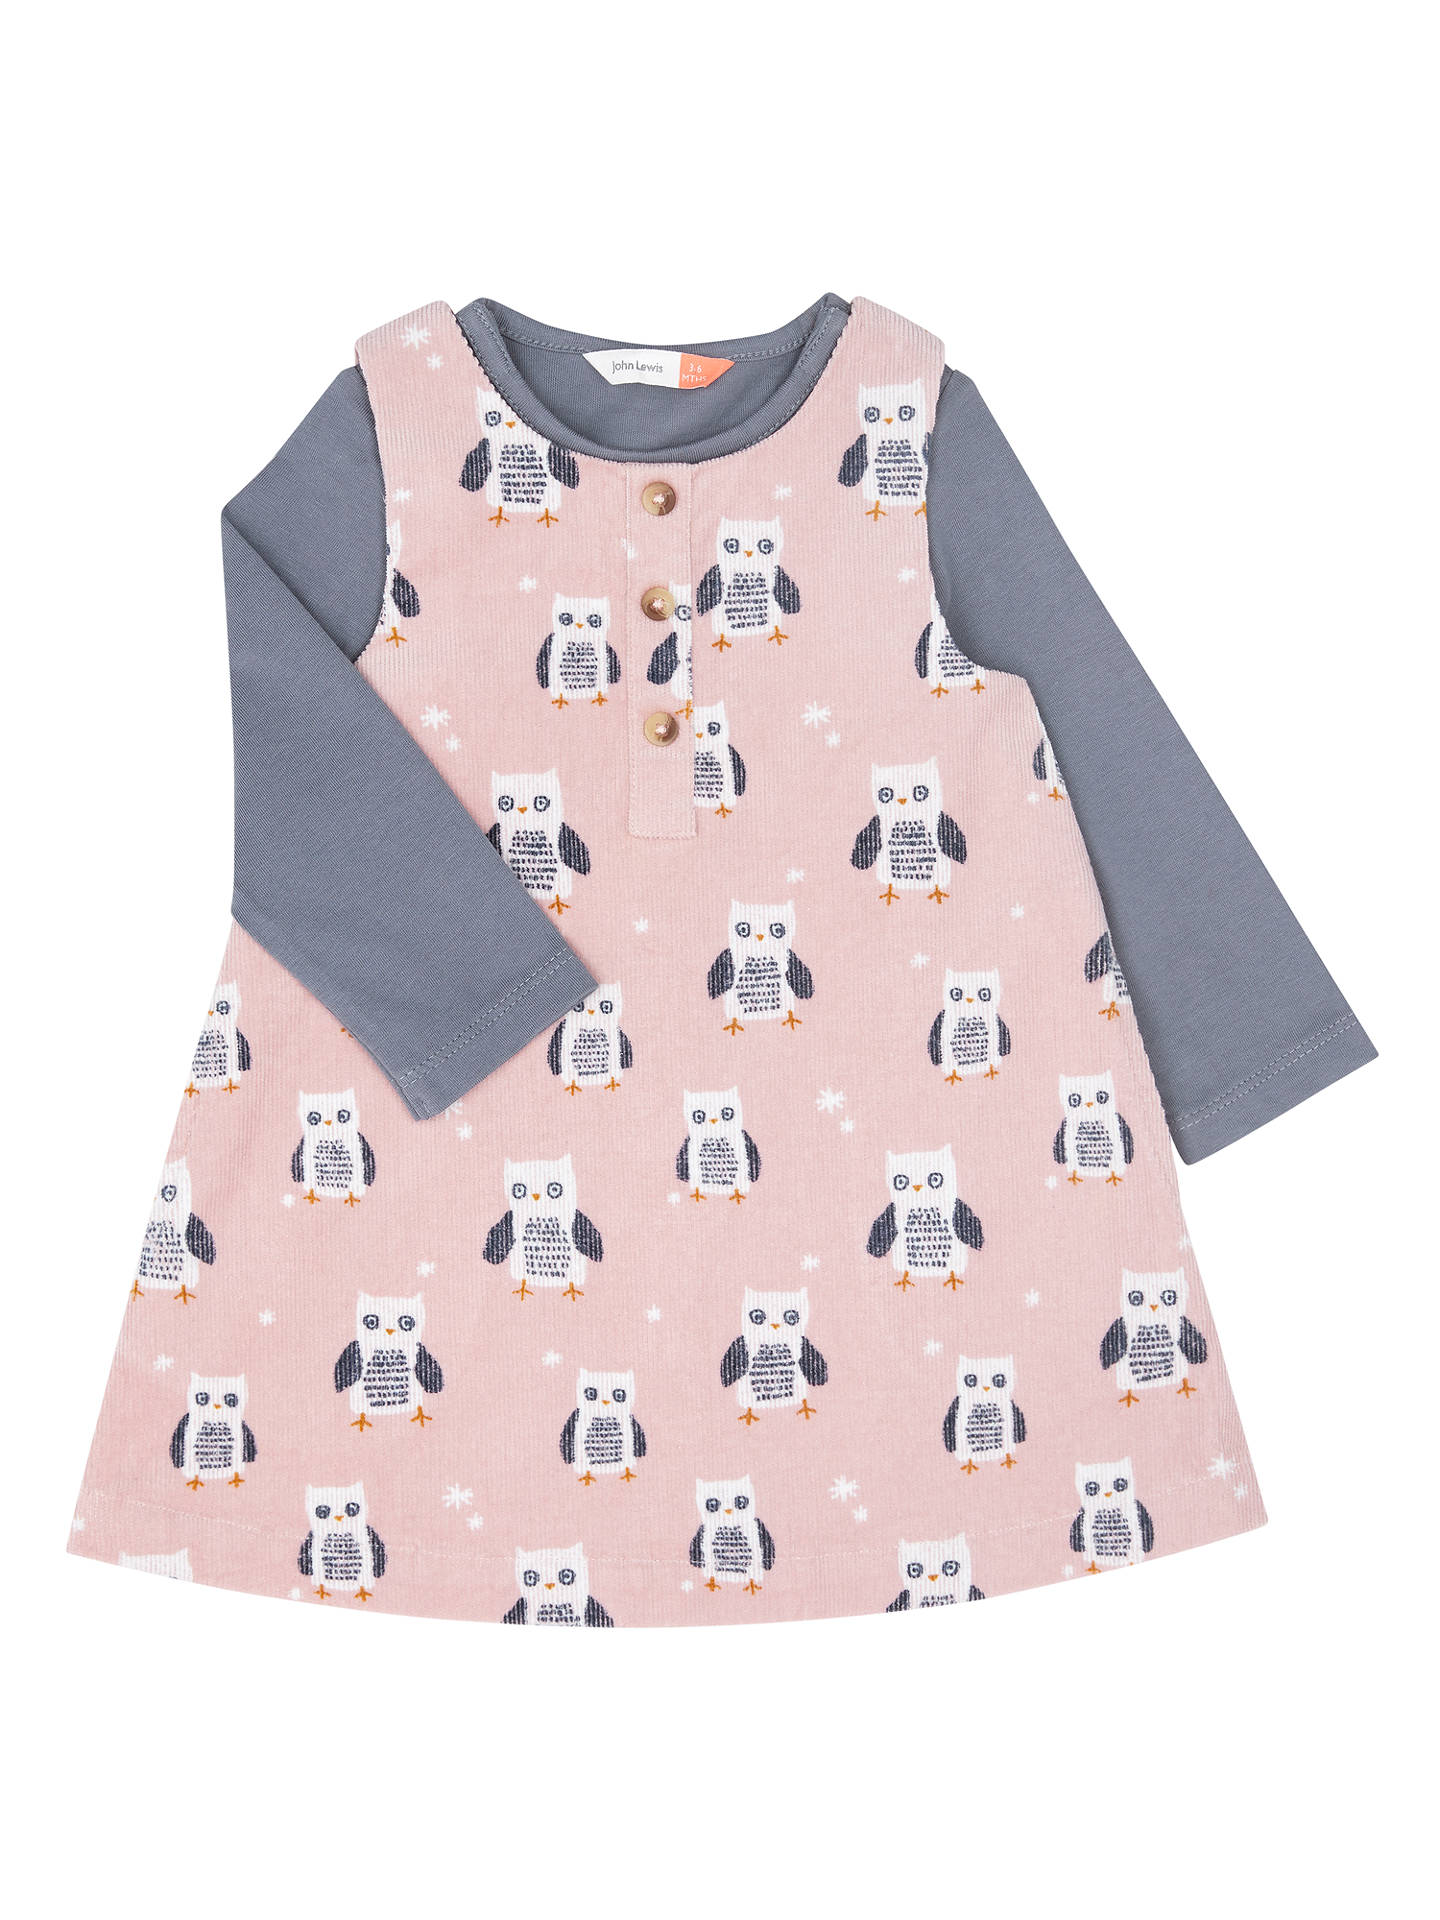 John Lewis Baby Owl Cord Dress and T-Shirt Set, Pink at John Lewis ...
